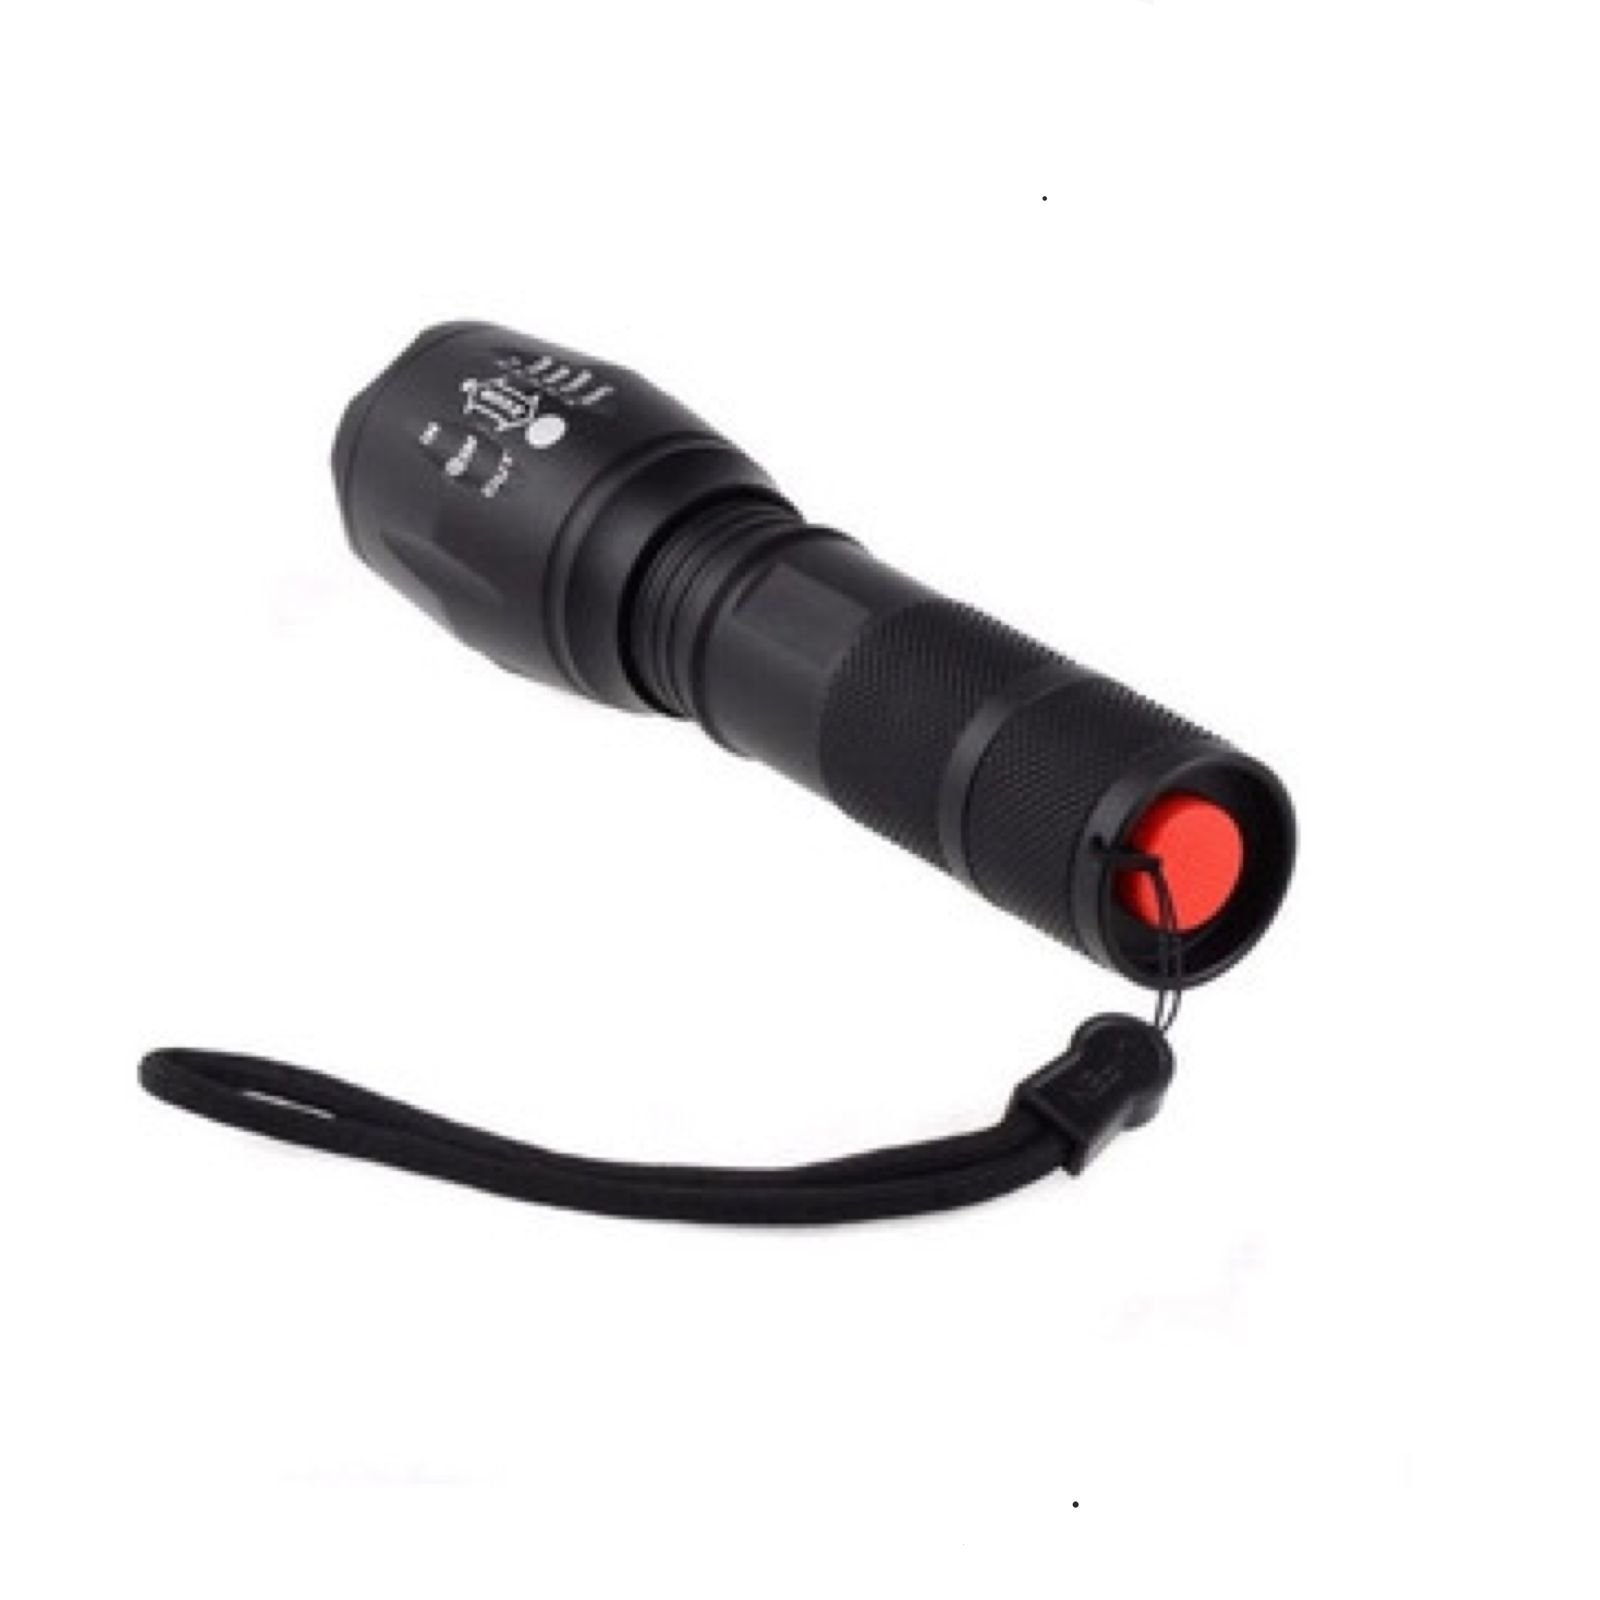 Lanterna Tática Militar X1100 - XML-T6 Potente Recarregável e Sem Fio - 4